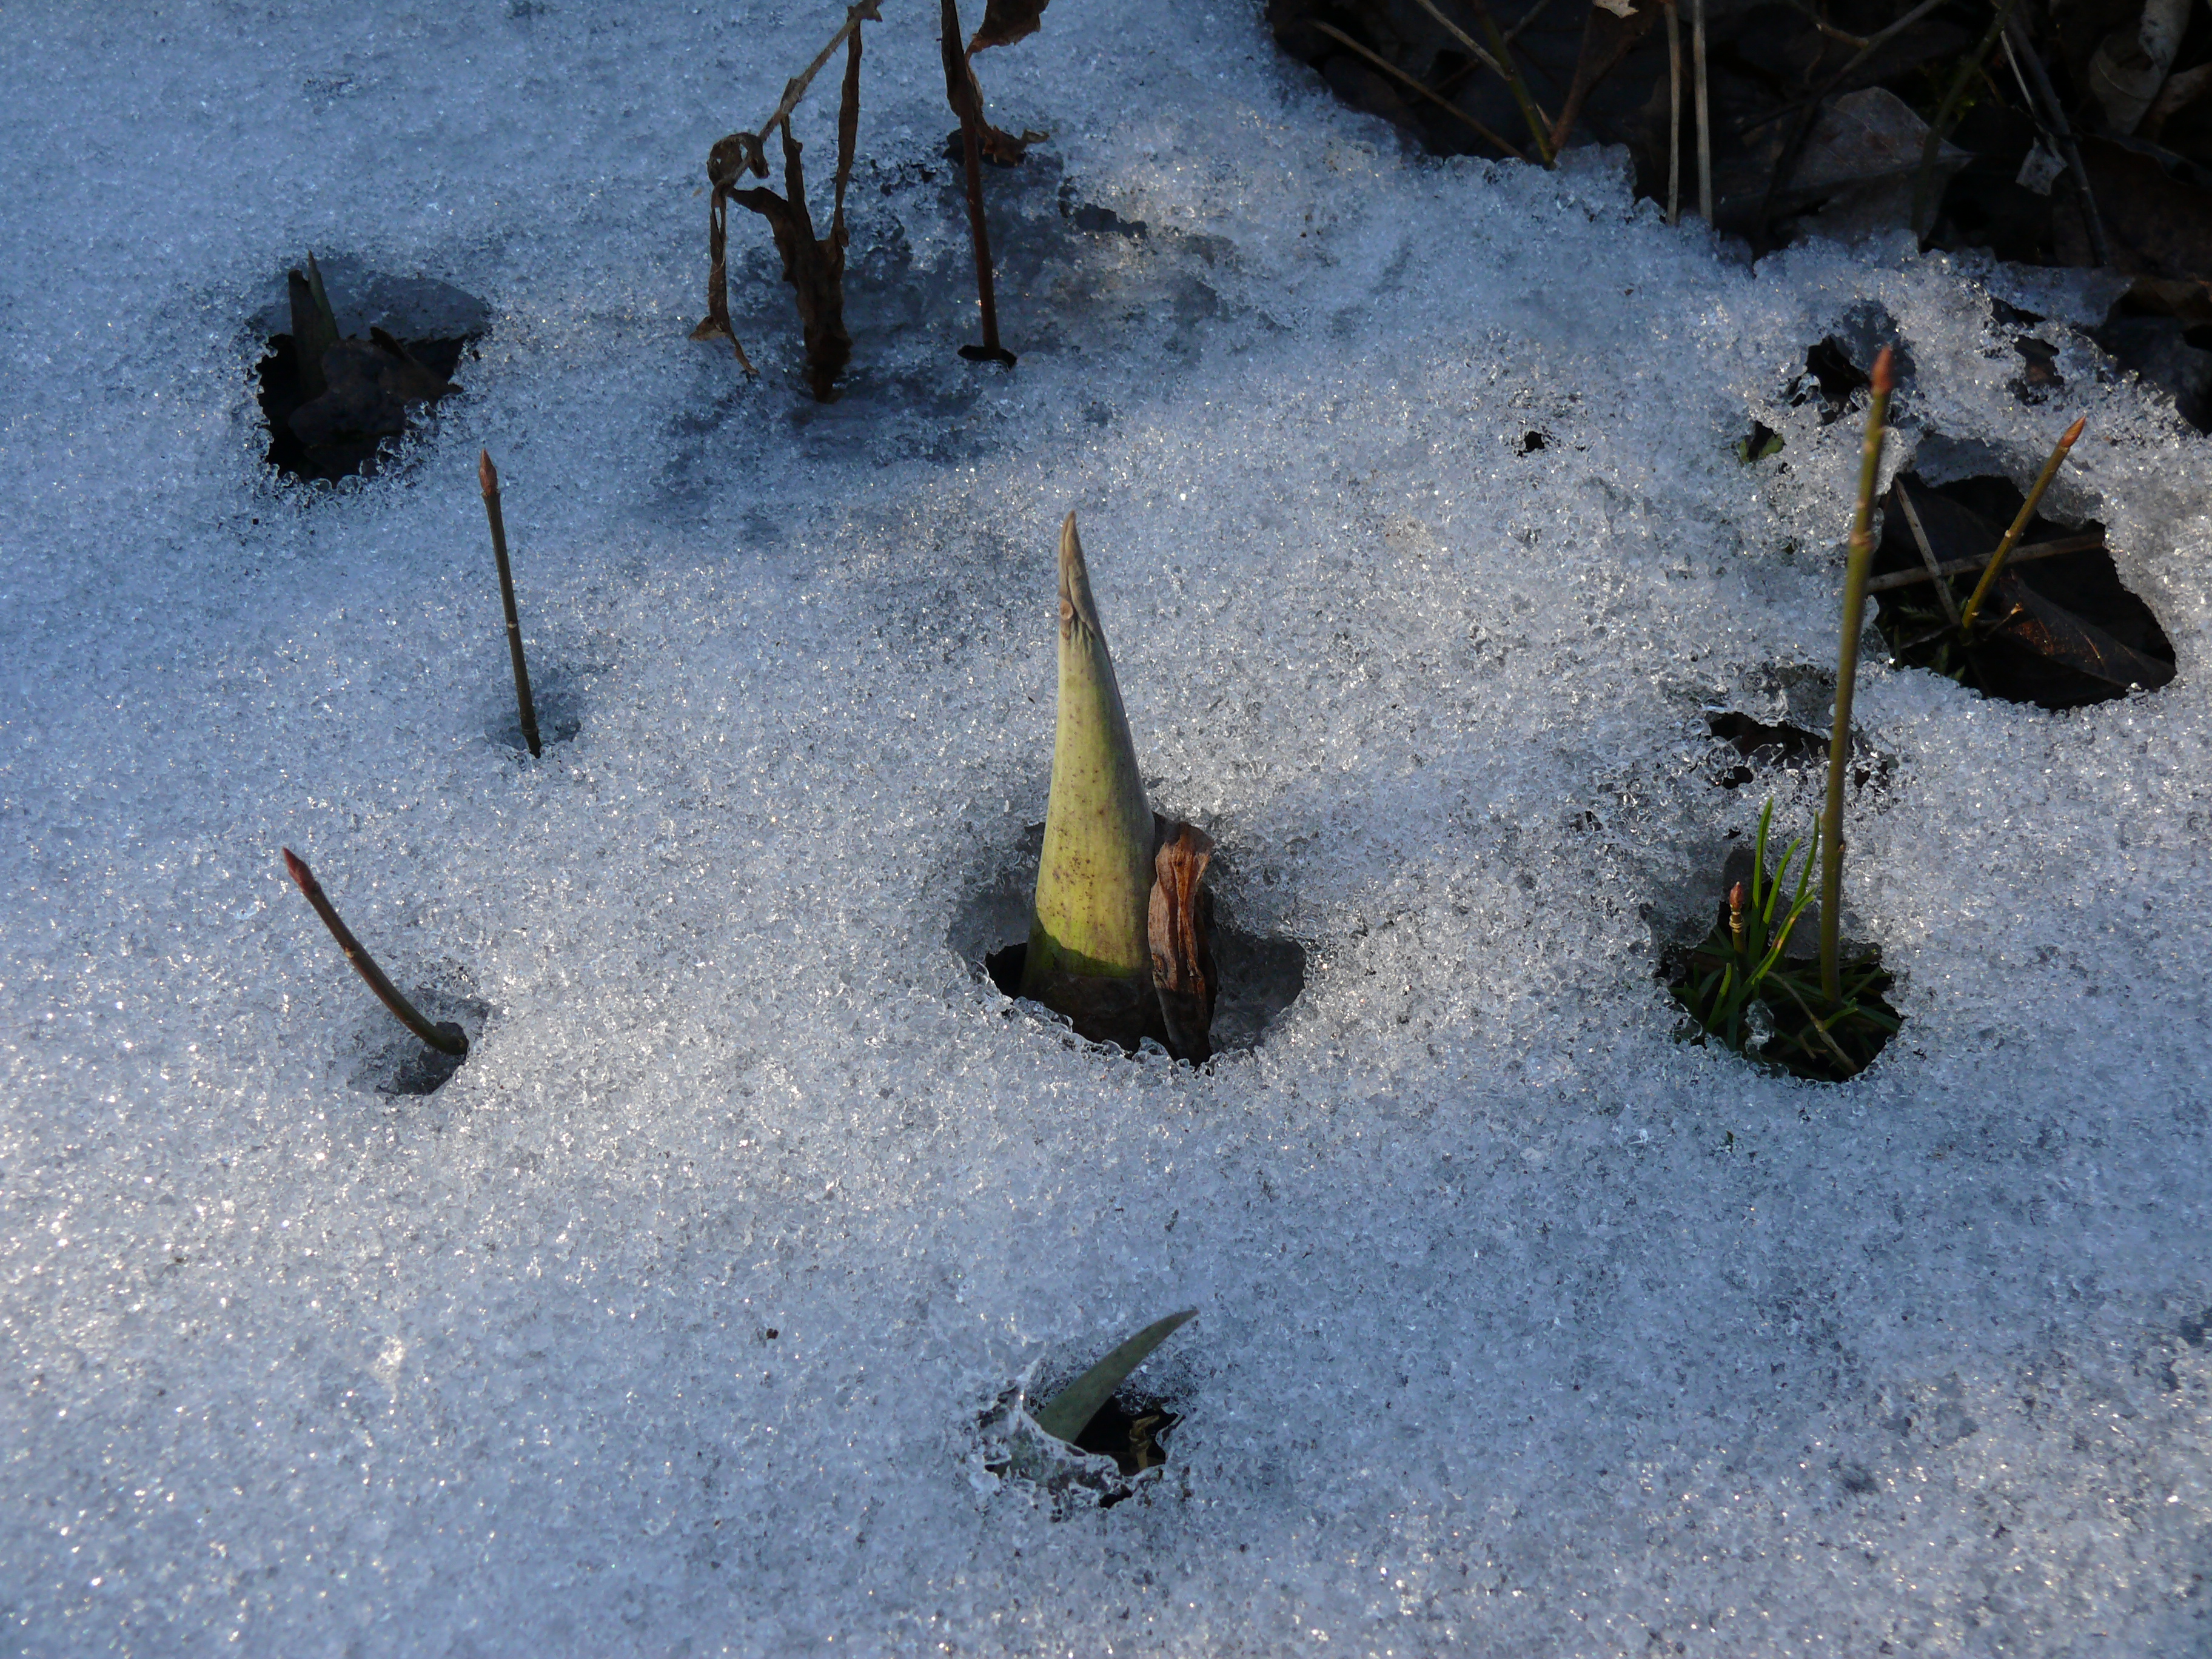 Skunk cabbage (Symplocarpus foetidus) emerges, melting the snow around it.